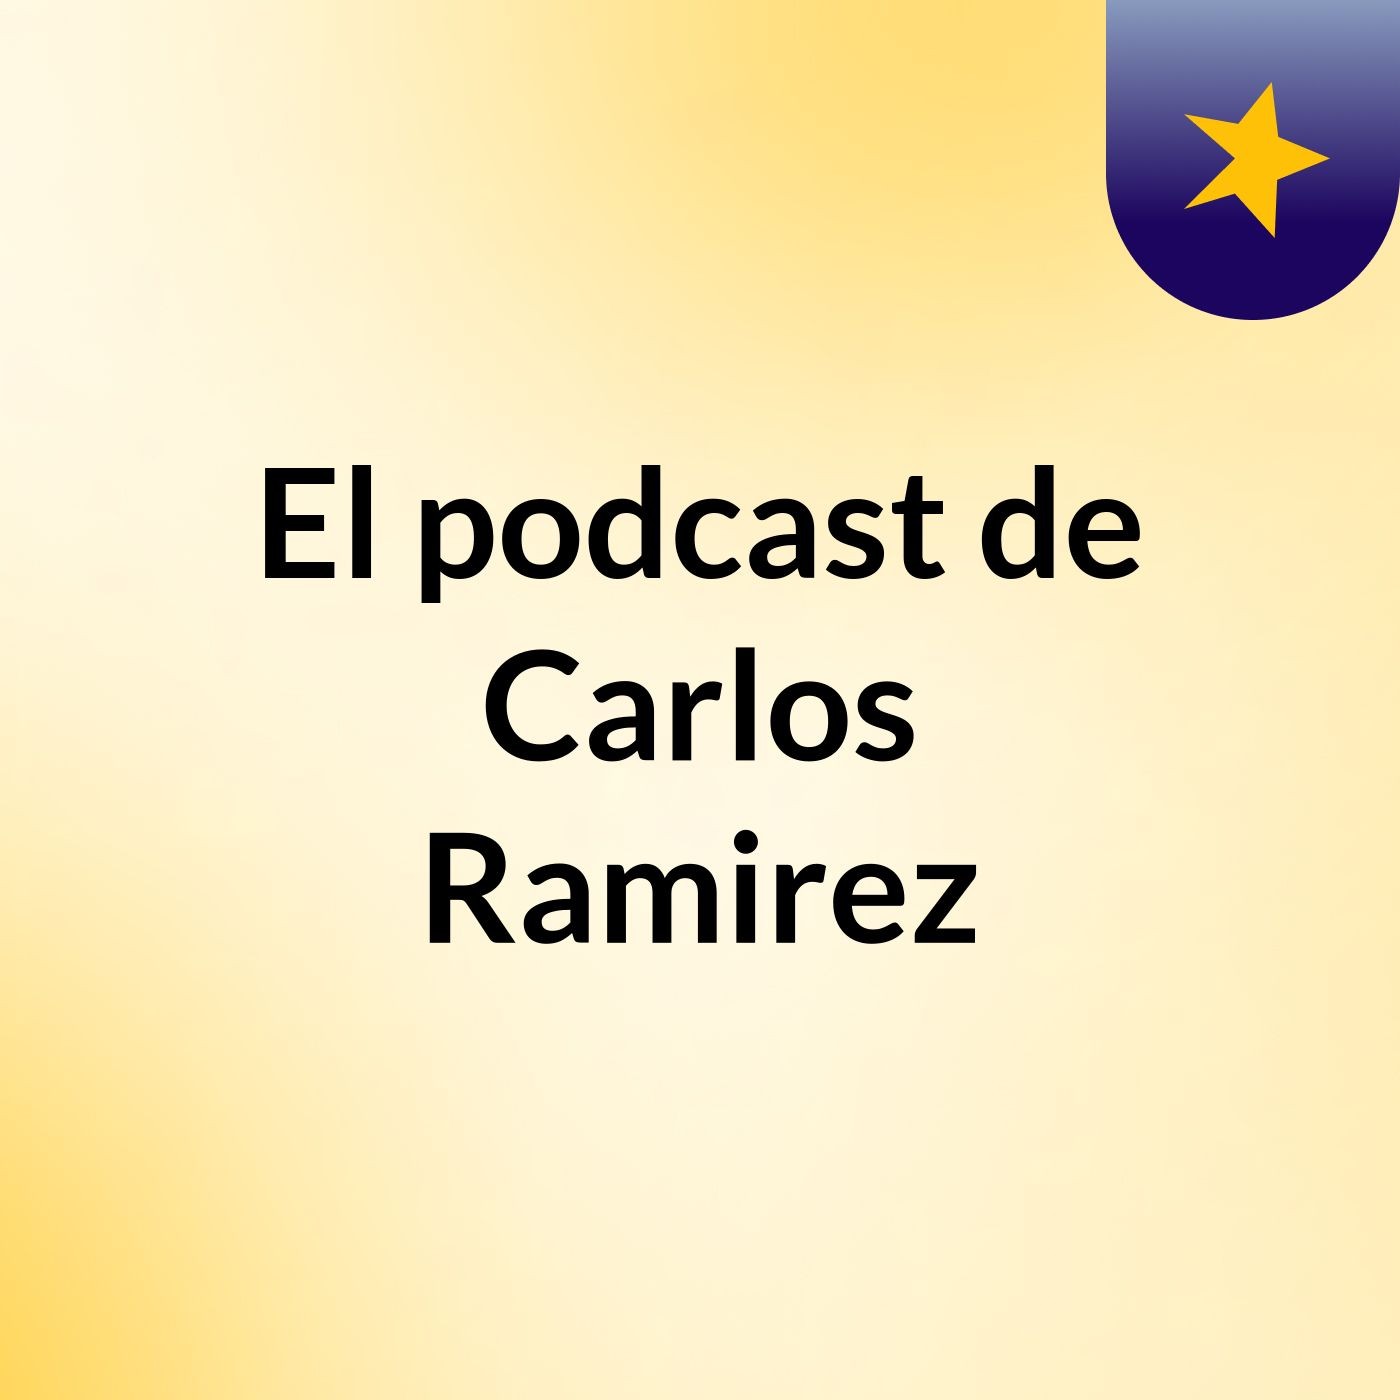 El podcast de Carlos Ramirez